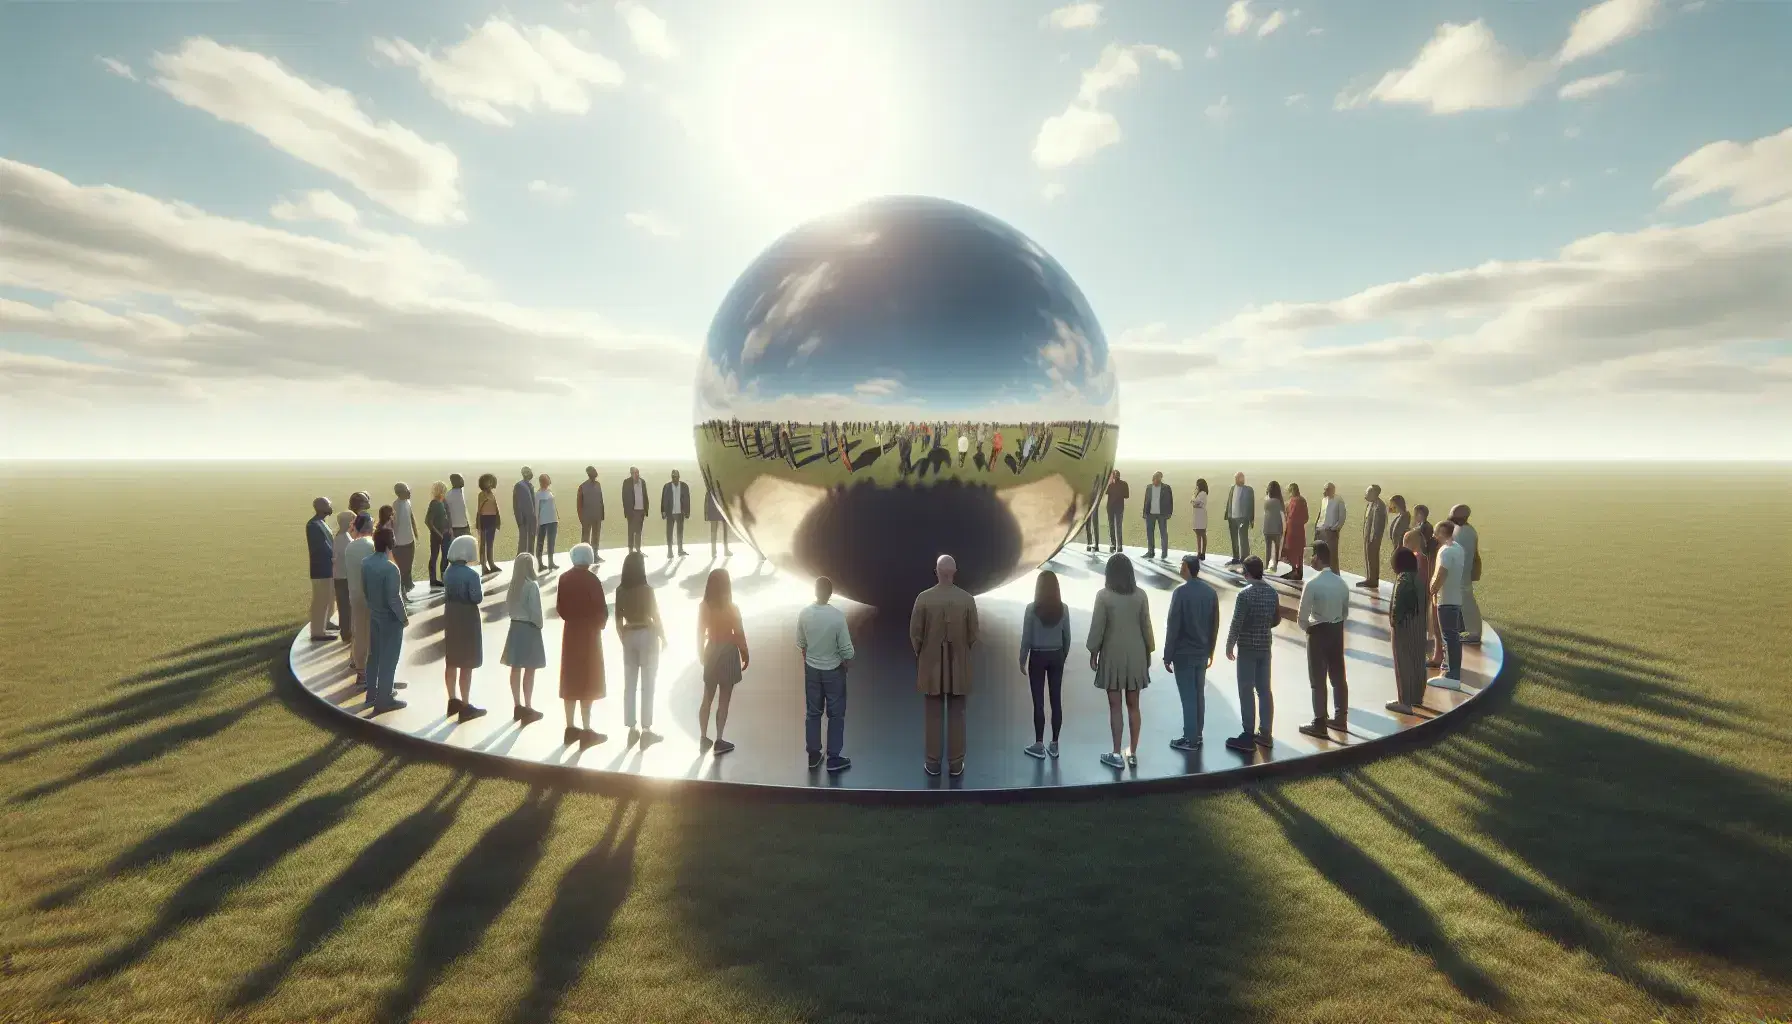 Grupo diverso de personas interactuando alrededor de una esfera metálica reflectante en un parque con césped verde y cielo azul.